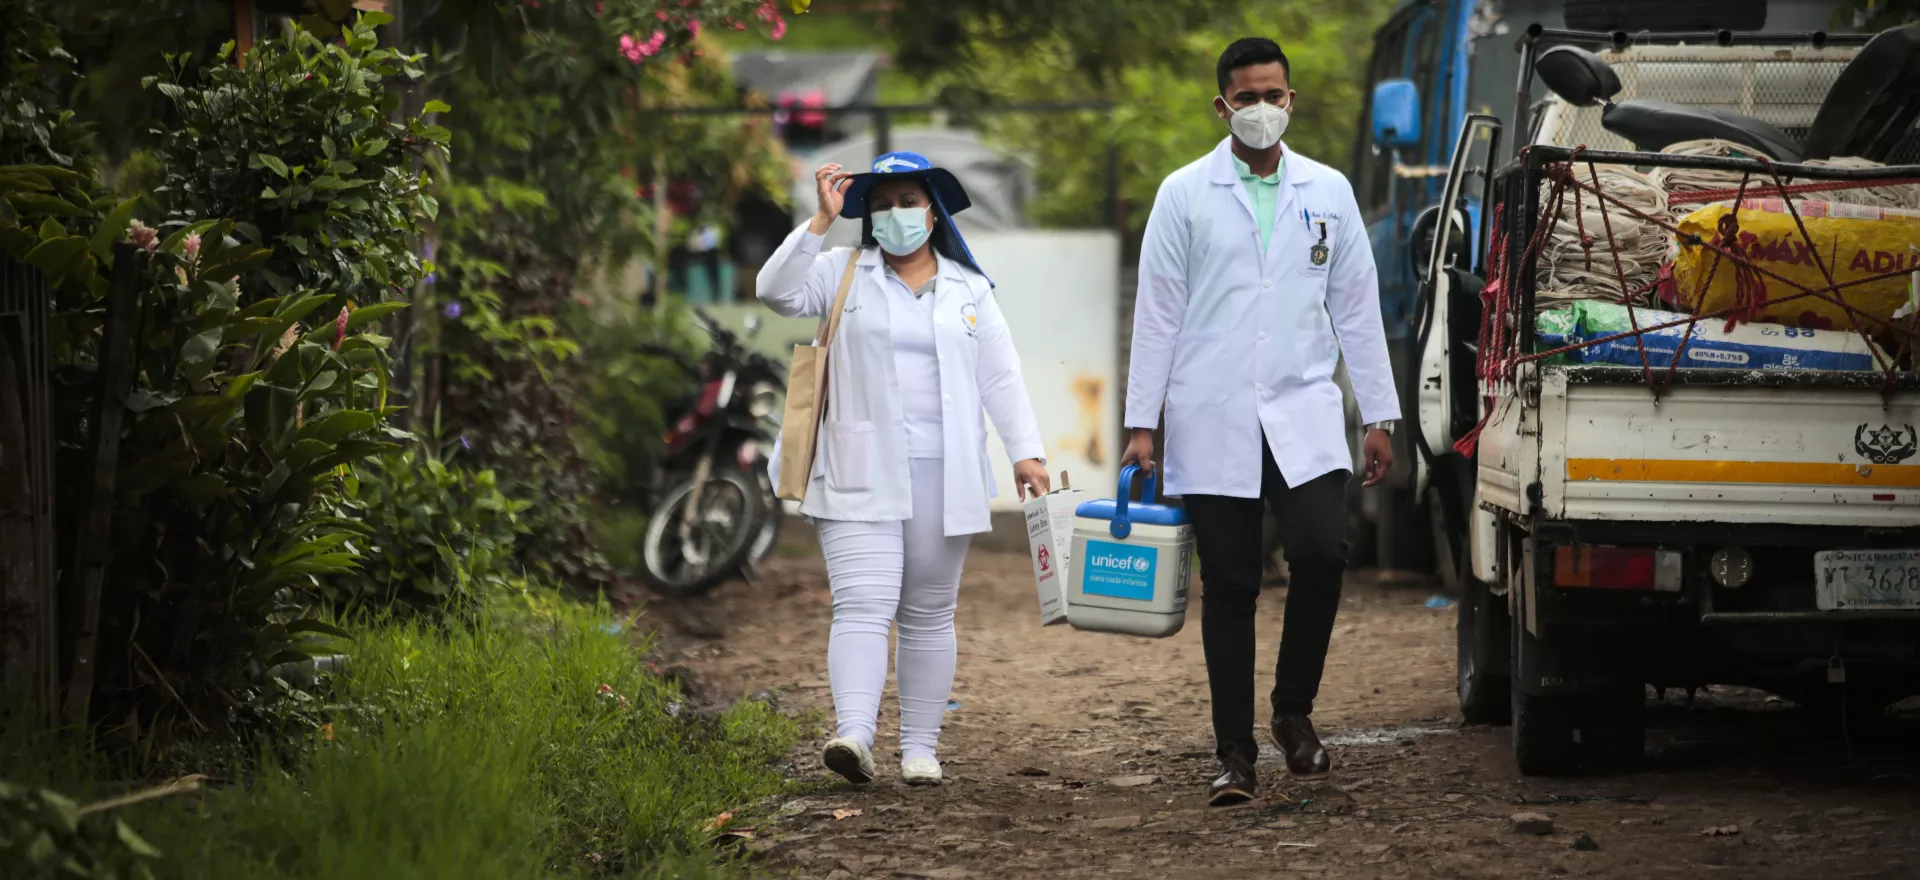 عاملون في مجال الصحة يمشون في شوارع ماتاجالبا، وهي مدينة في شمال نيكاراغوا، كجزء من حملة تطعيم من باب إلى باب.